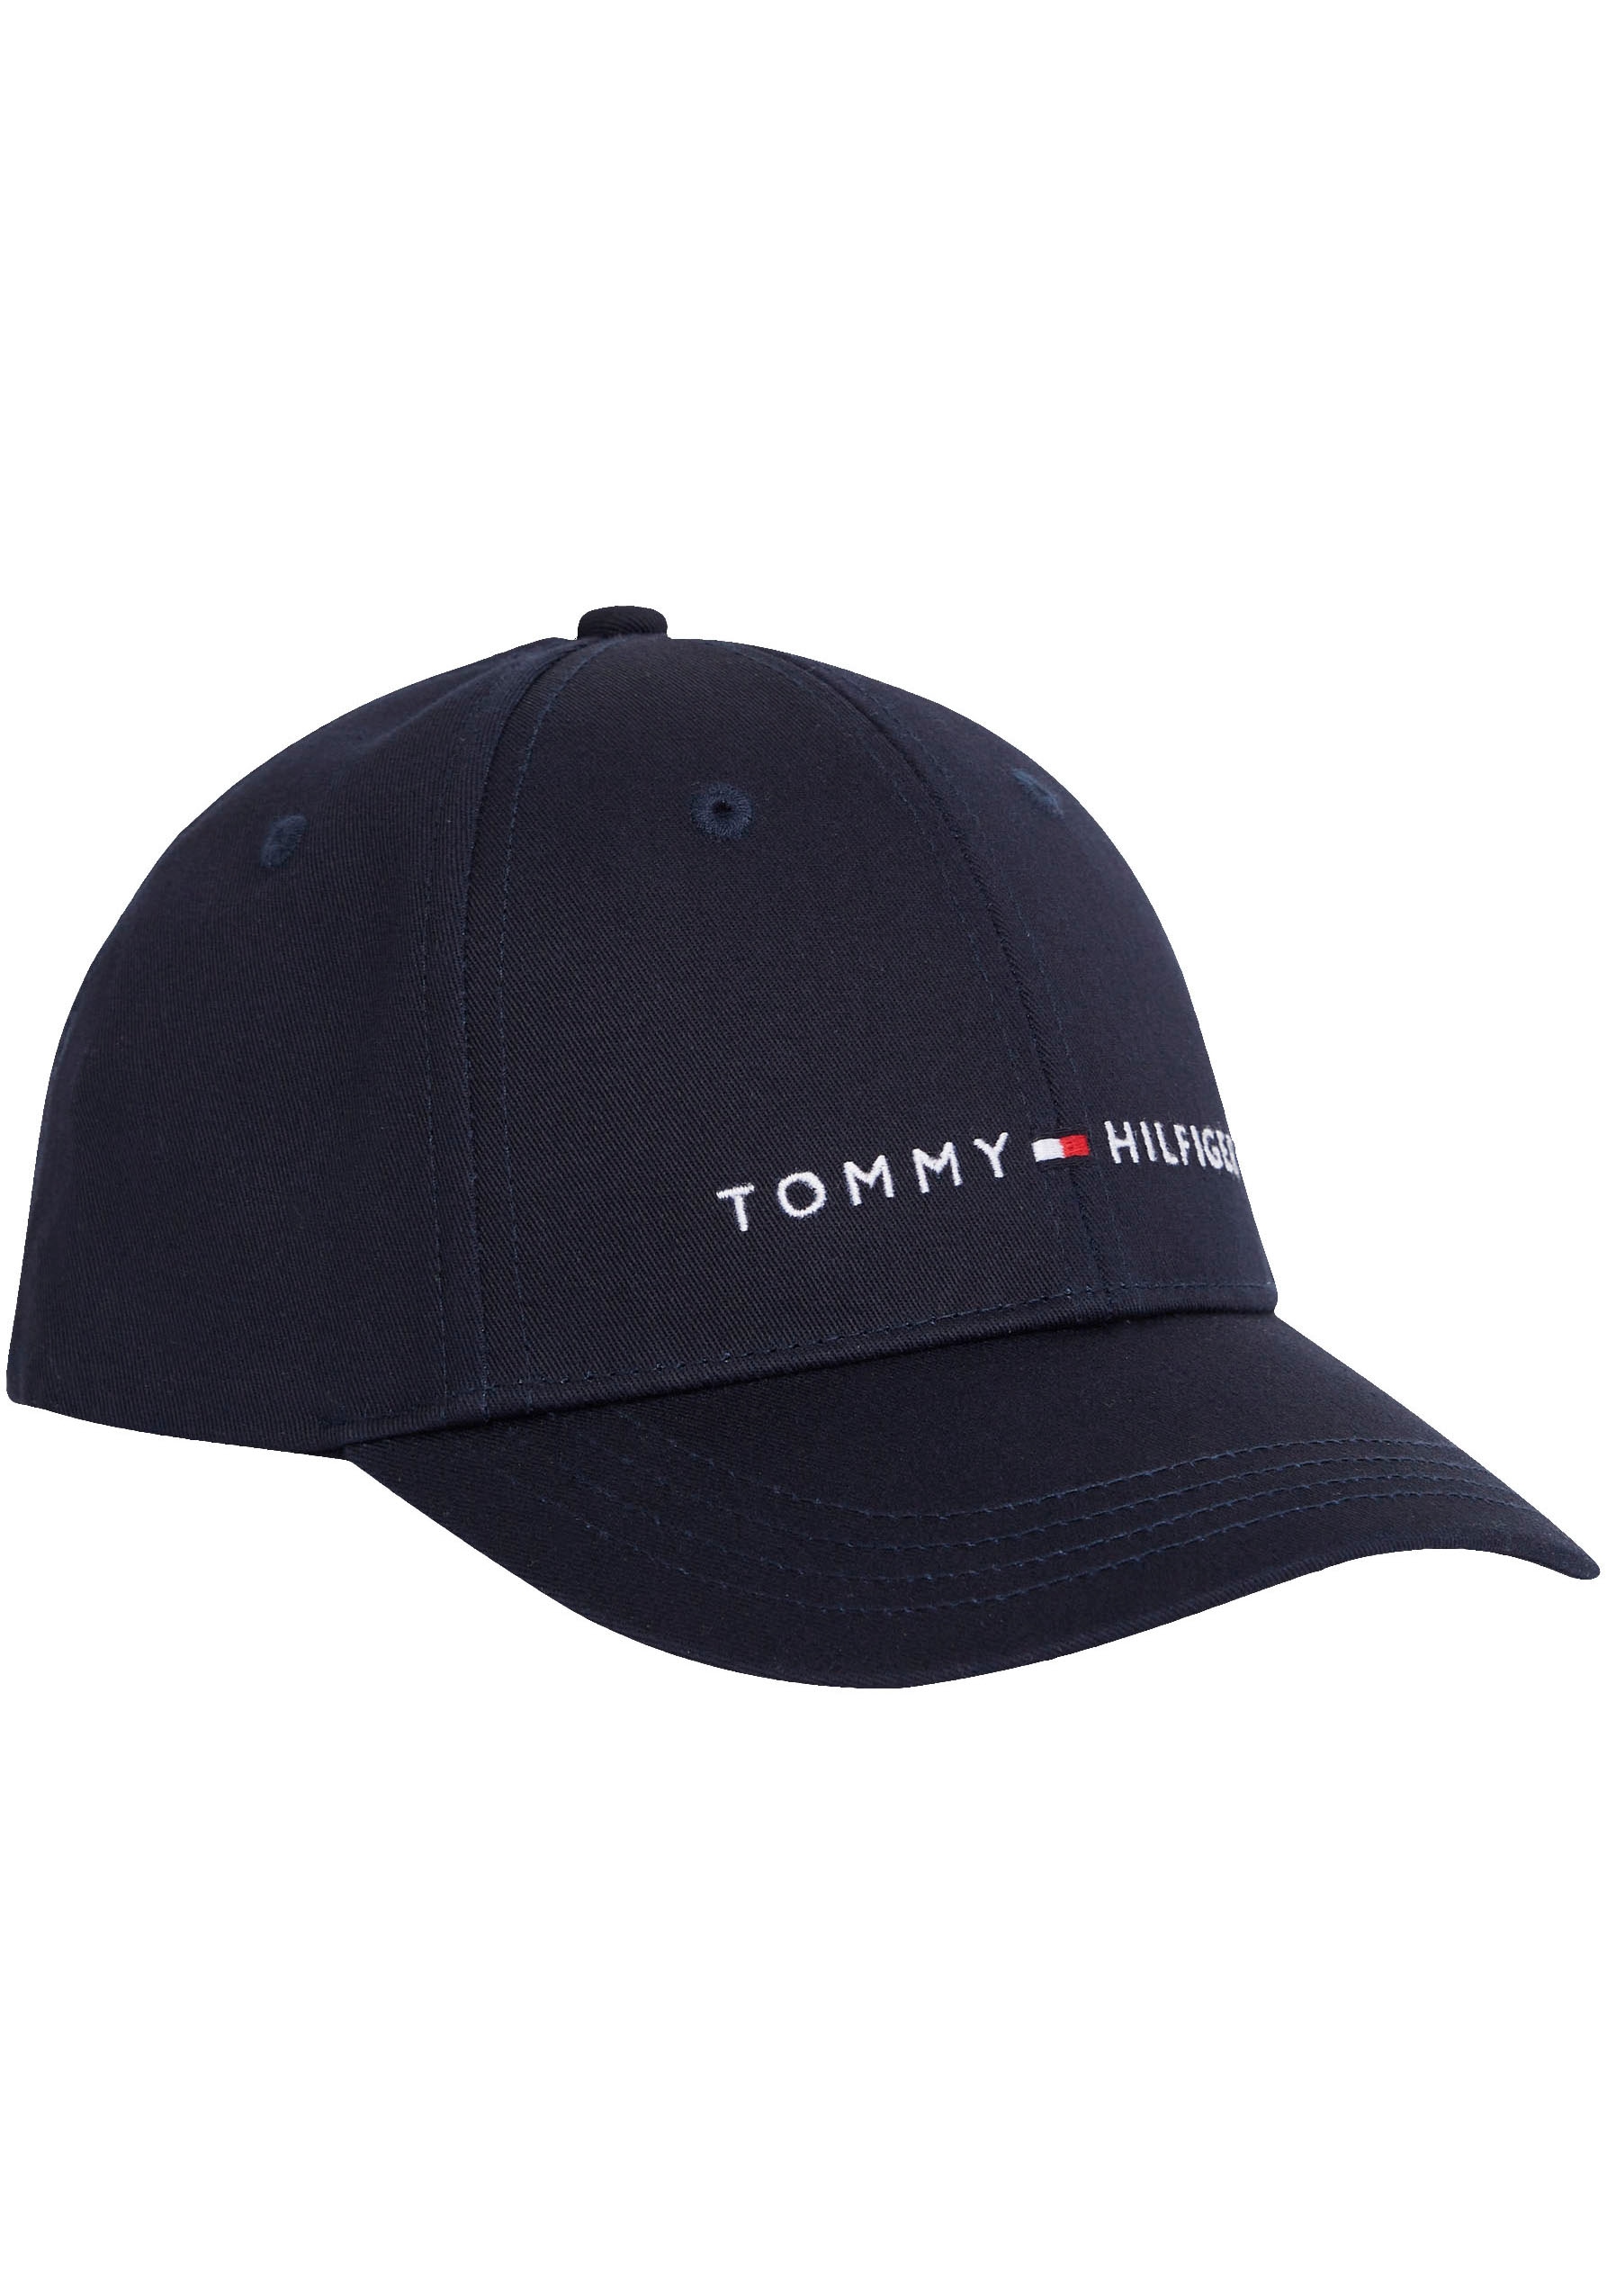 Tommy Hilfiger Snapback Cap, Kinder Essential verstellbare Cap mit Branding  bestellen | I'm walking